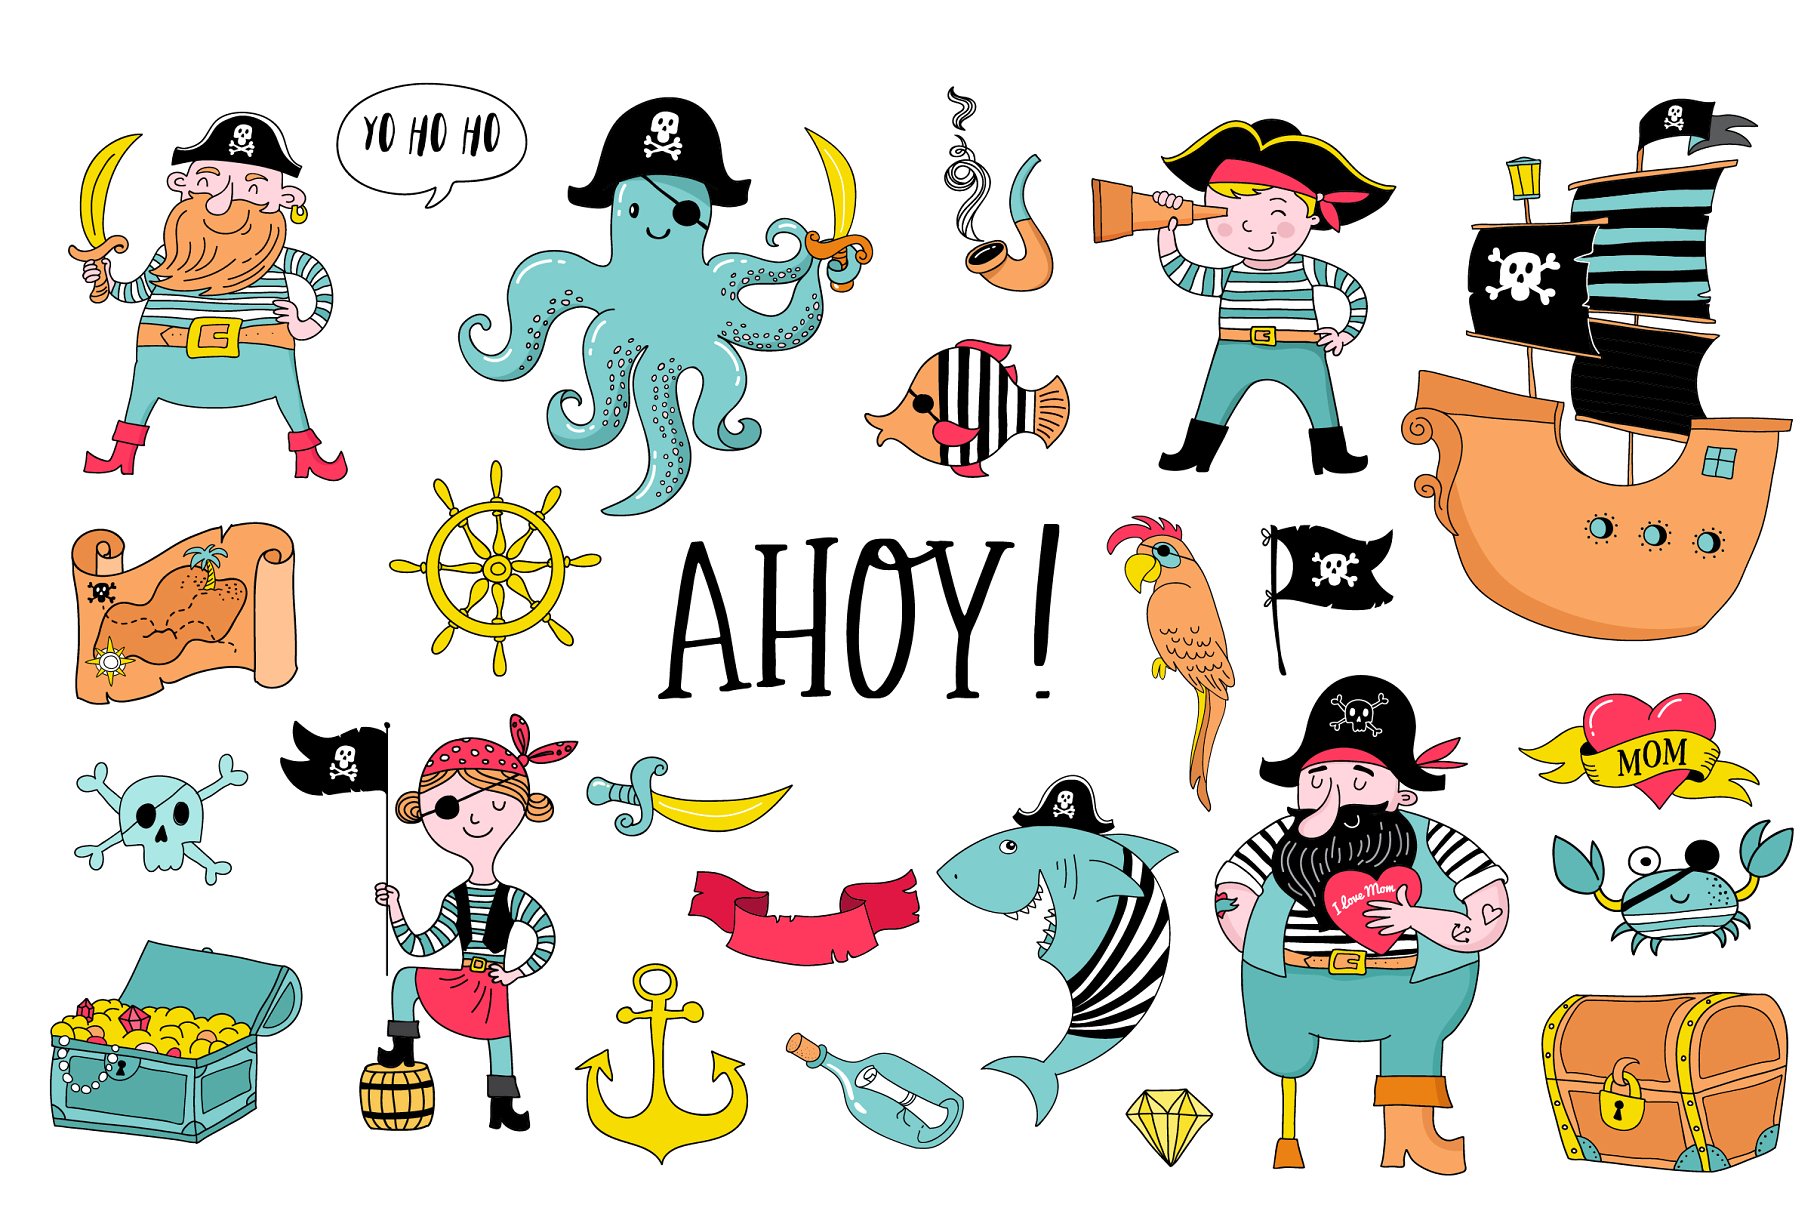 海盗船系列马克笔手绘卡通插画 Ahoy! Pirate collection插图(4)